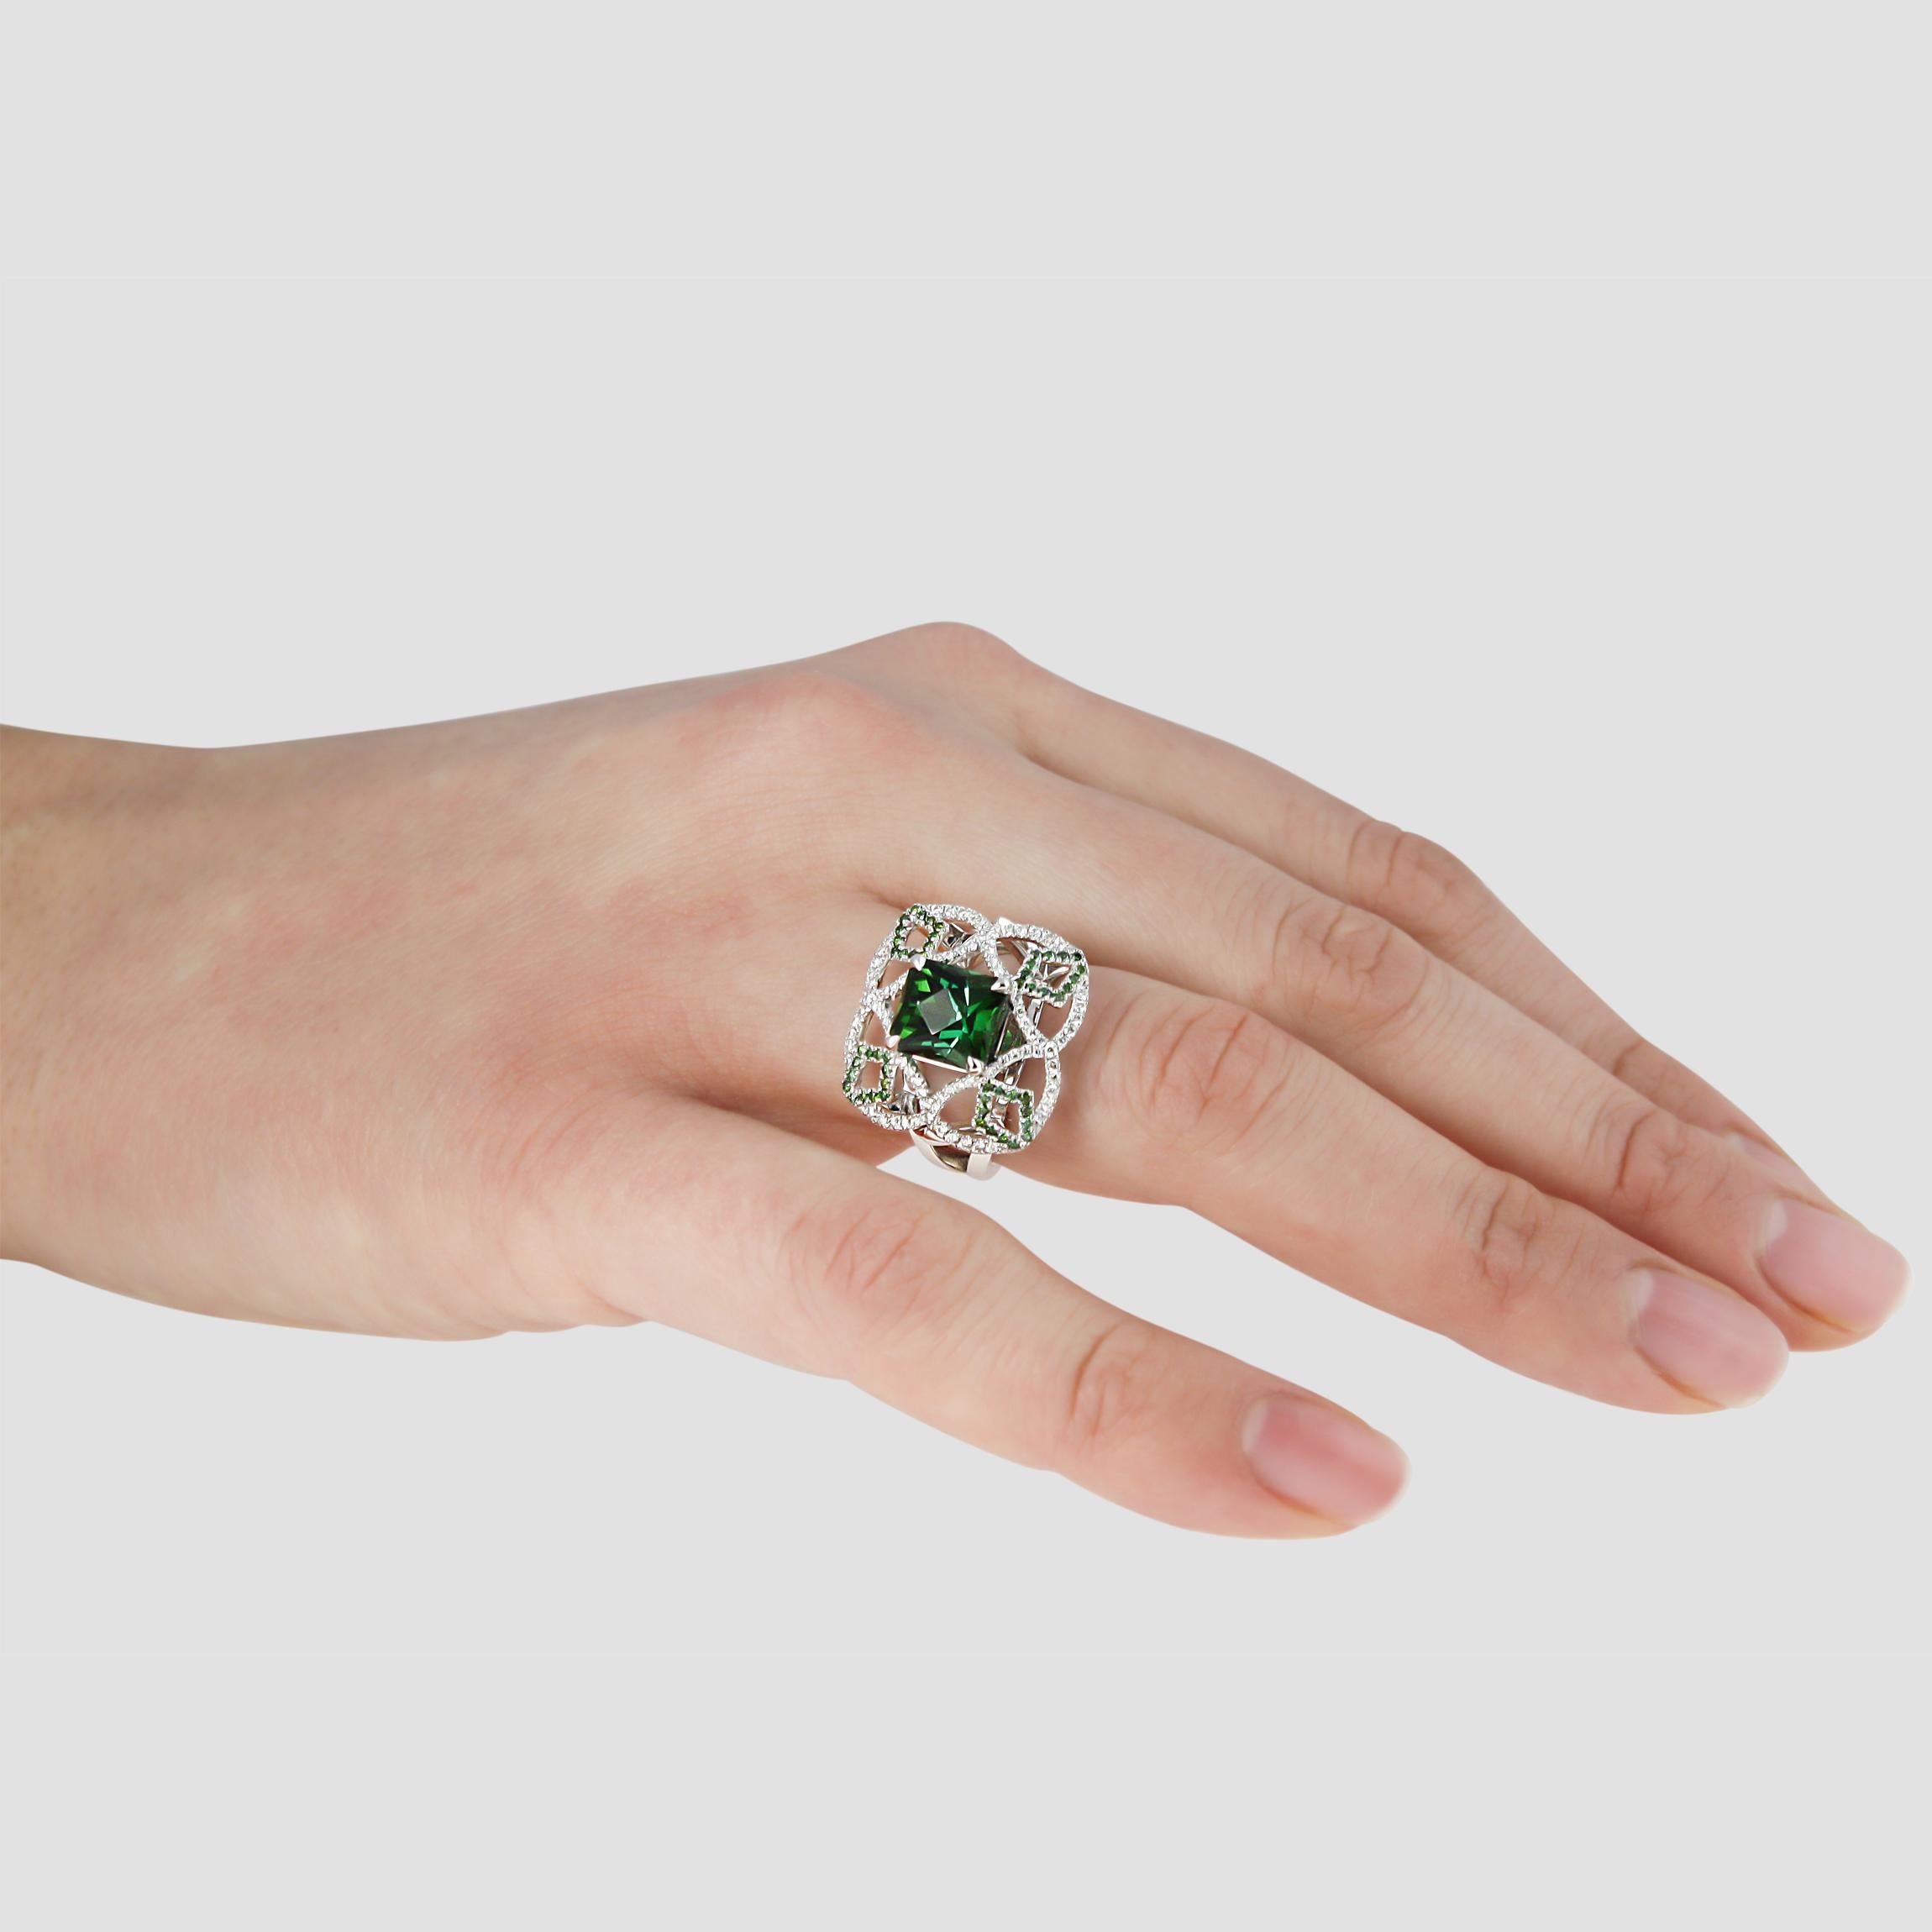 Unser Pomona Ring ist ein 1 von 1 Prunkstück der Collection'S.

Bei der Gestaltung dieses Rings haben wir mit dem Edelstein begonnen. Der sattgrüne Turmalin wurde von unseren Edelsteinschleifern als Unikat geschliffen. Die ungewöhnlichen Facetten